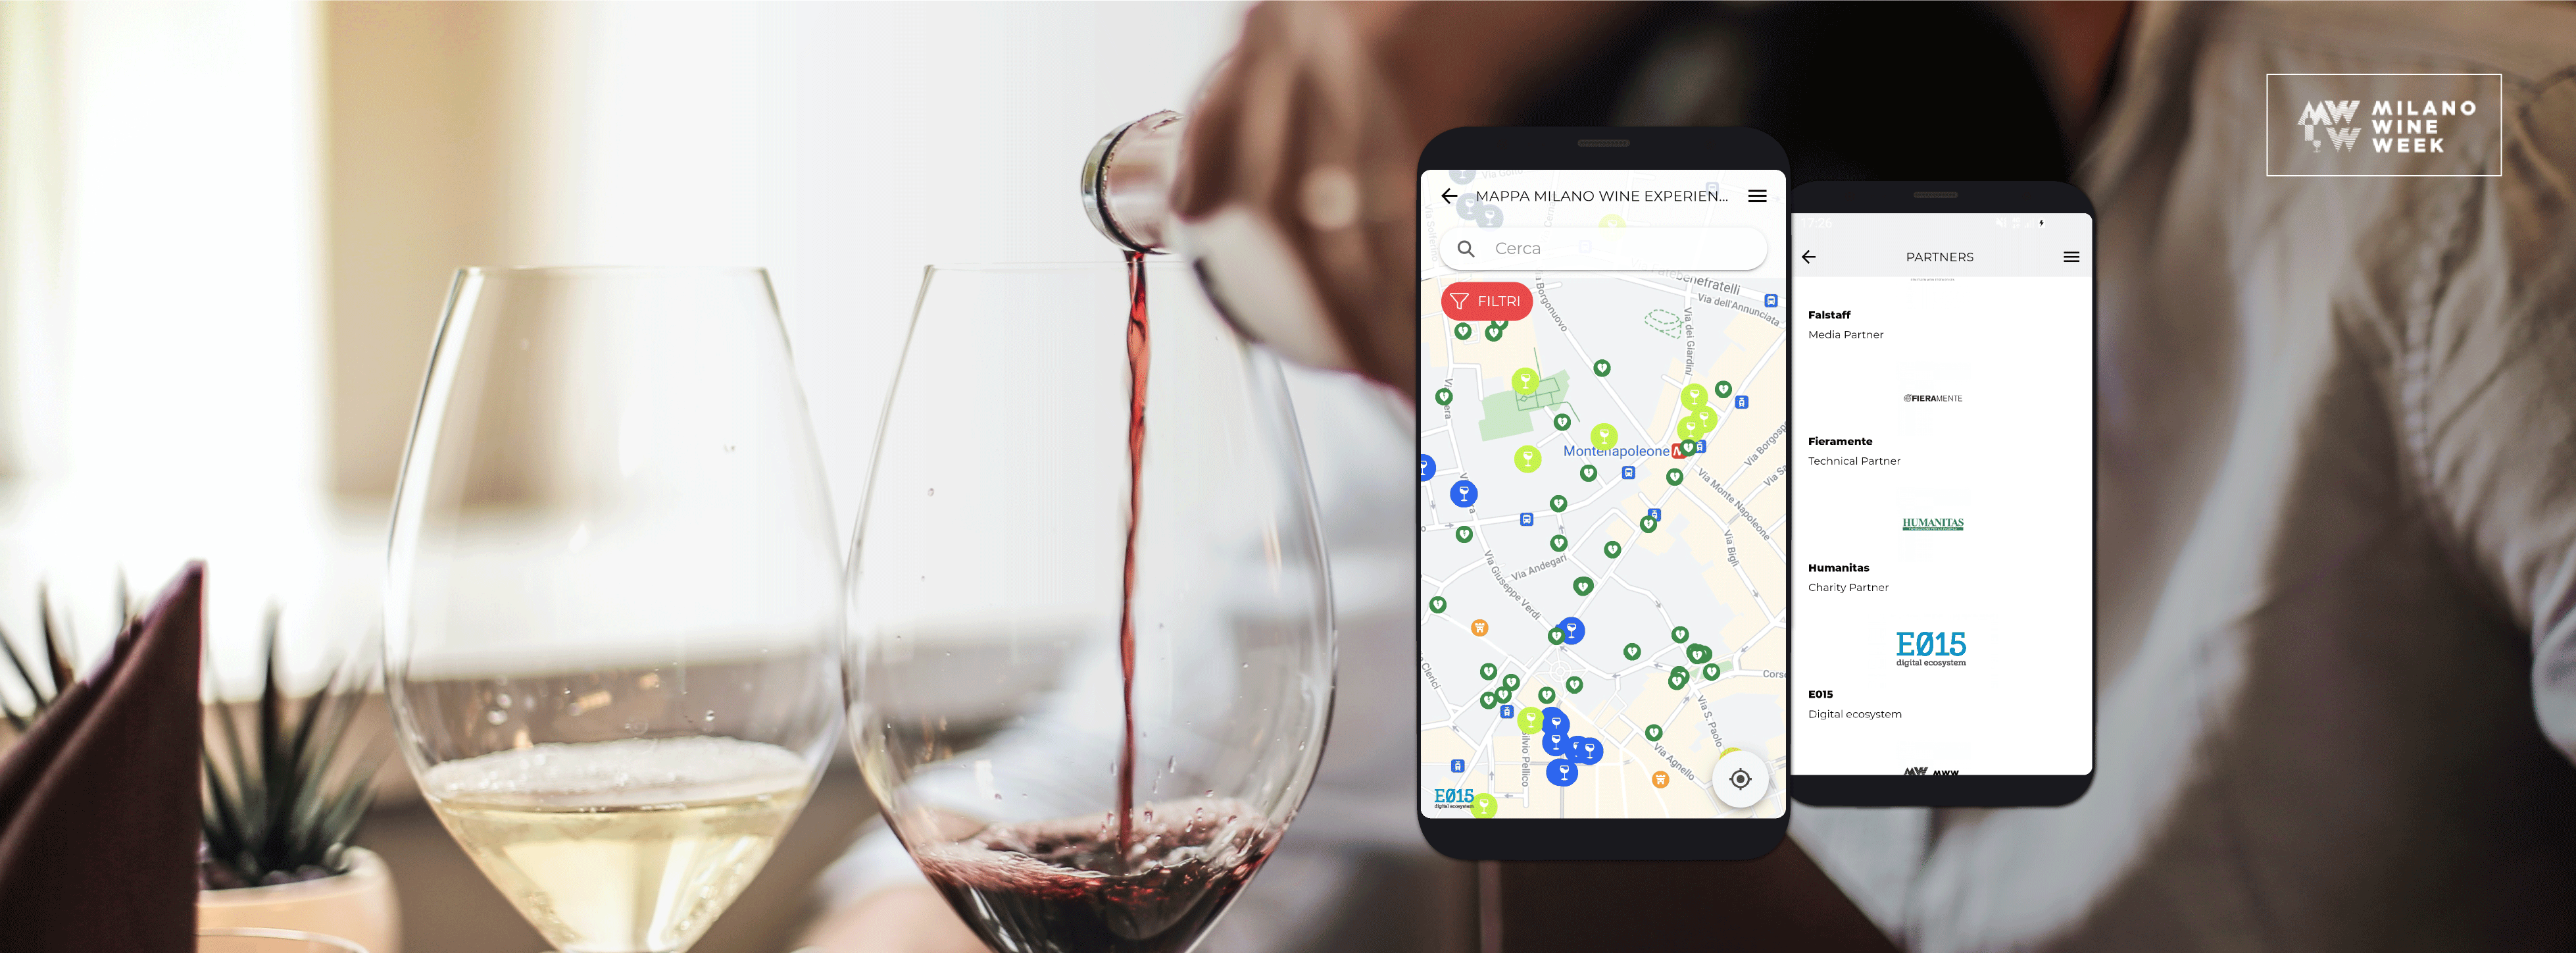 Nuova App E015 Milano Wine Week